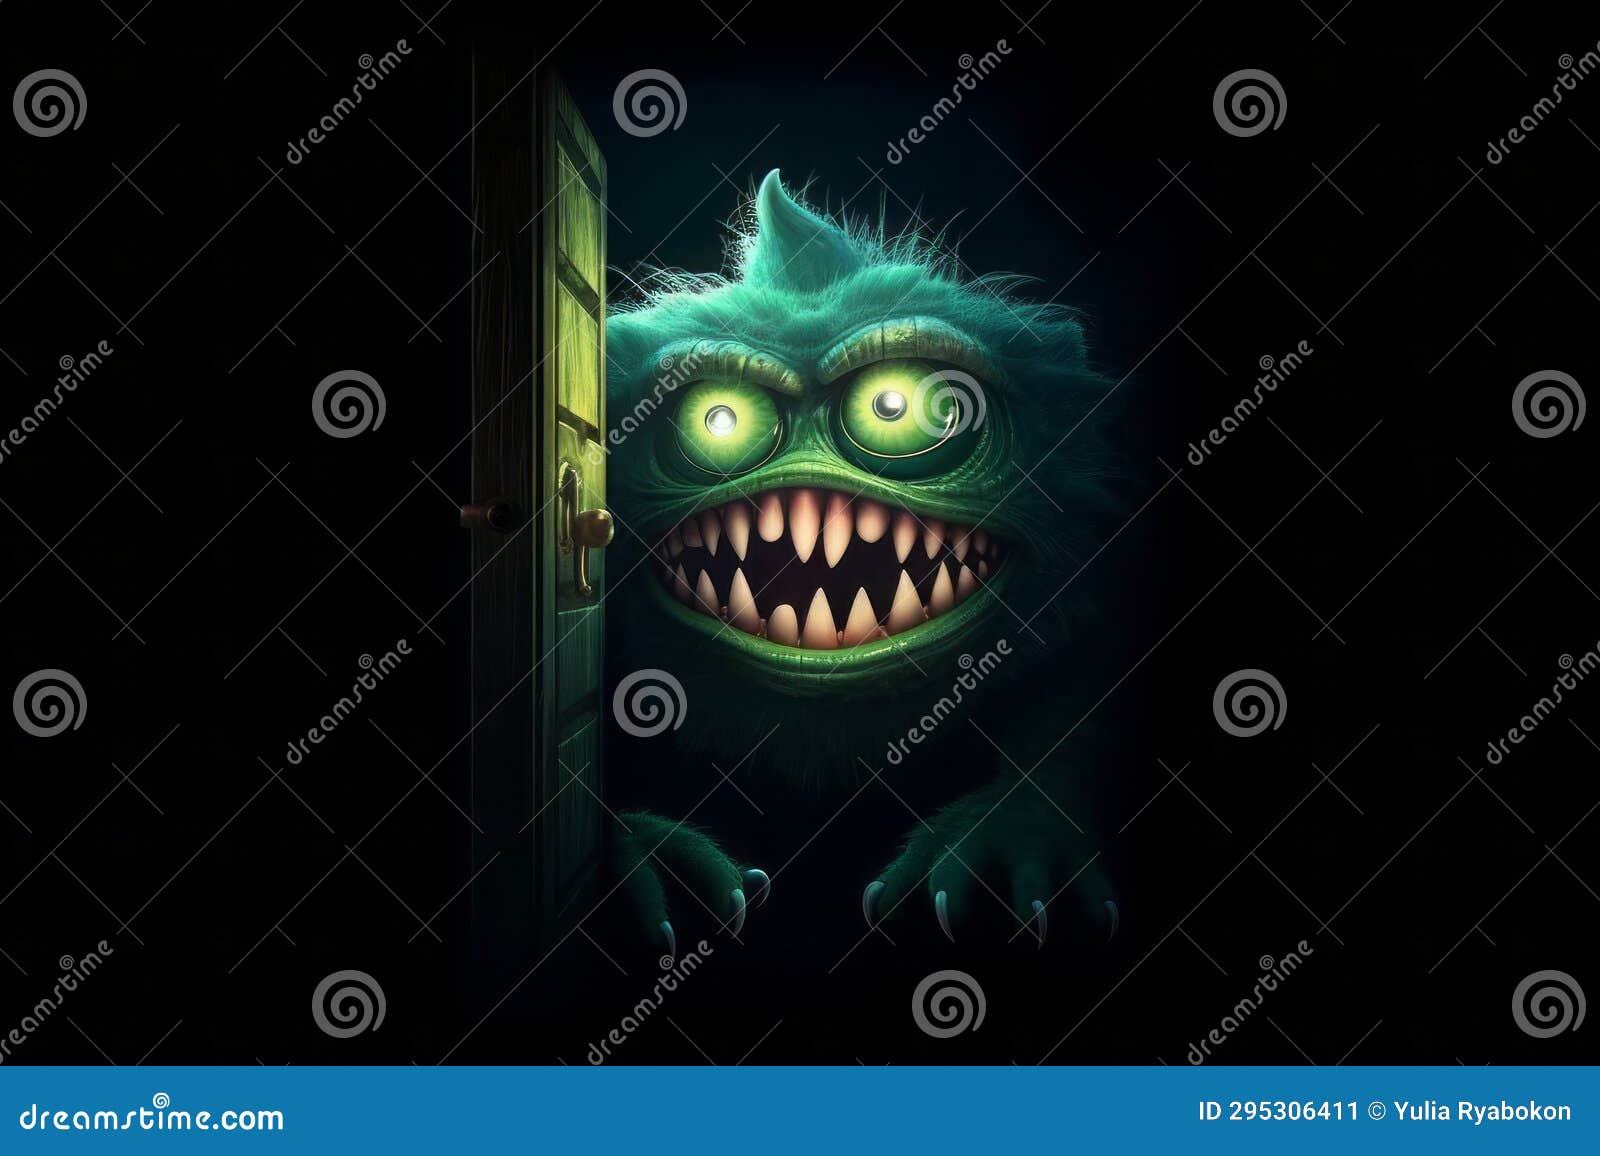 160+ Monster In Open Door Stock Photos, Pictures & Royalty-Free